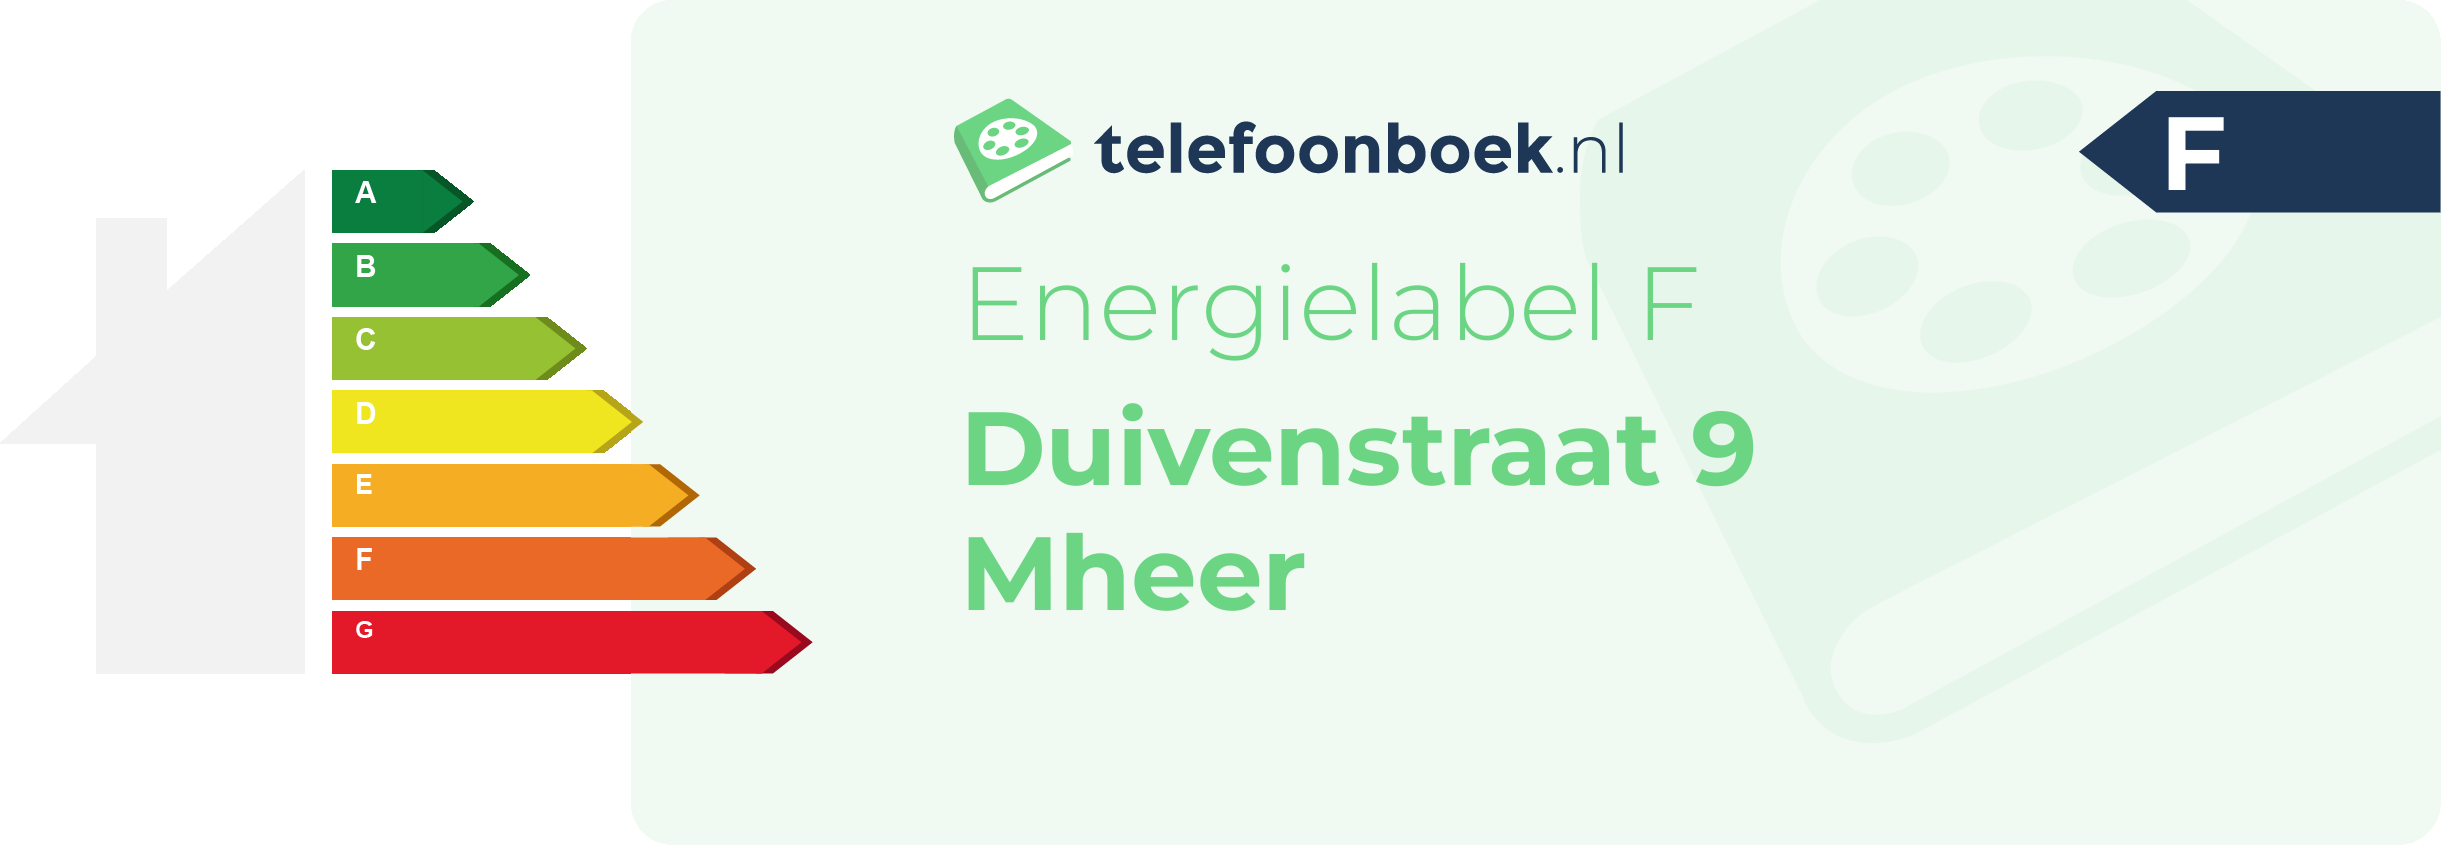 Energielabel Duivenstraat 9 Mheer